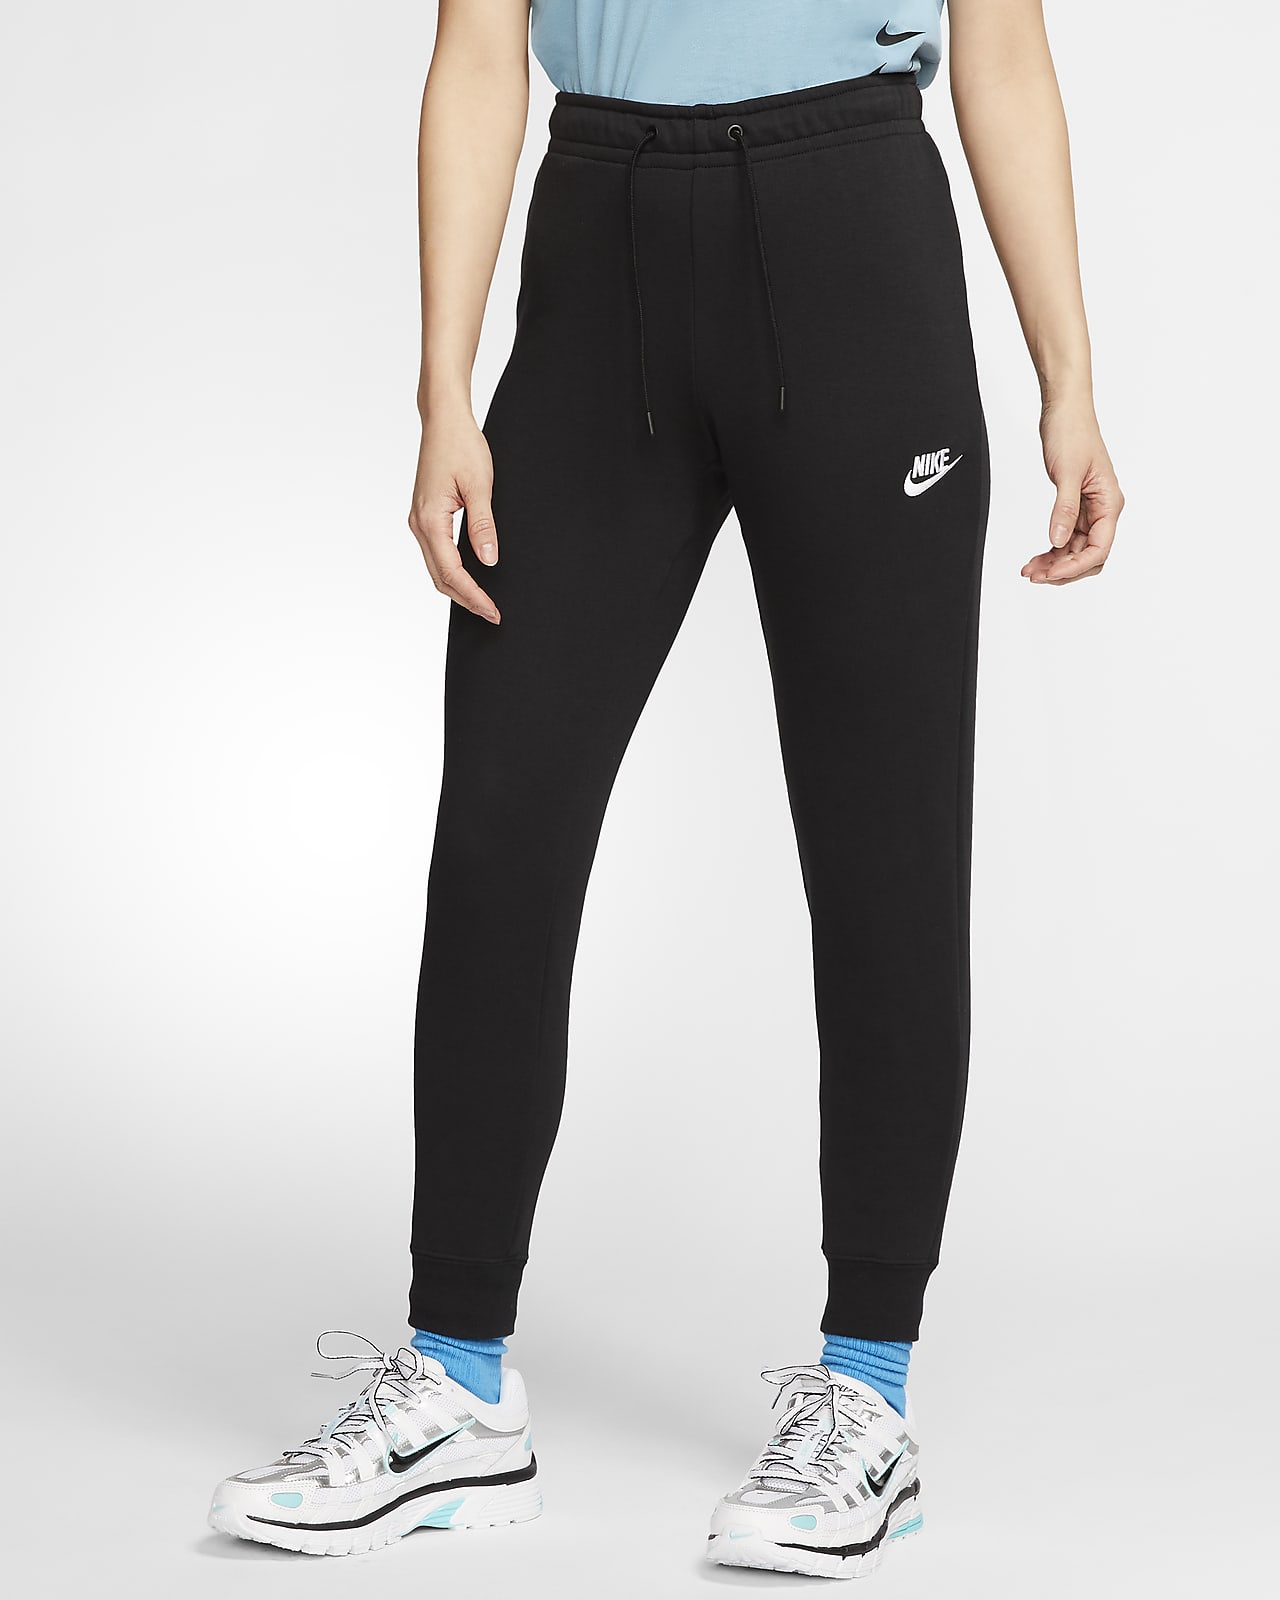 women's nike sportswear essential jogger pants grey